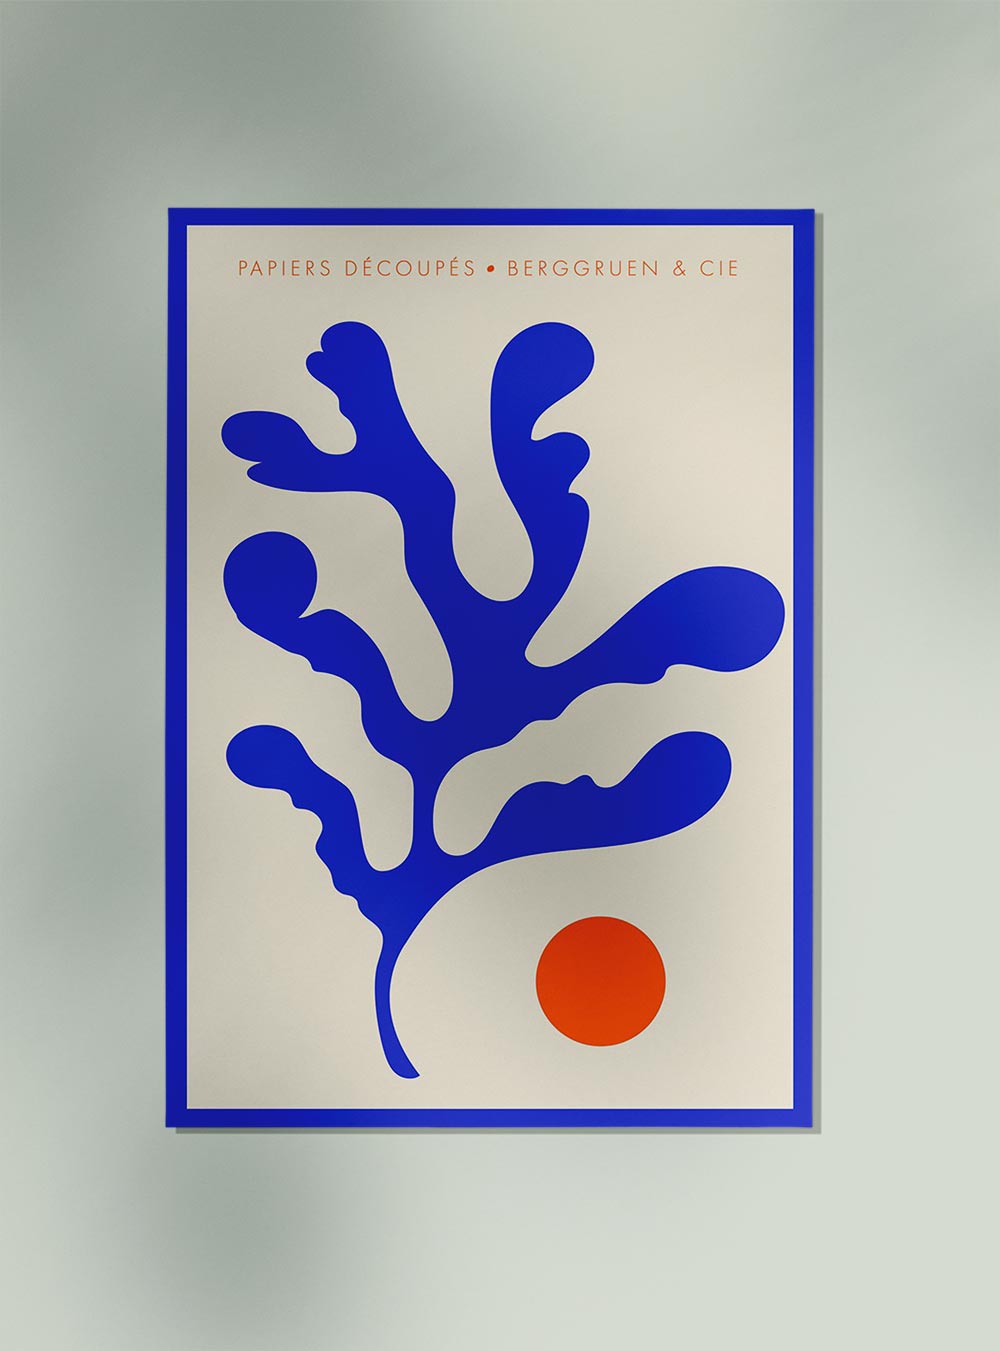 Seaweed Blue Orange Papiers Découpés Art Exhibition Poster